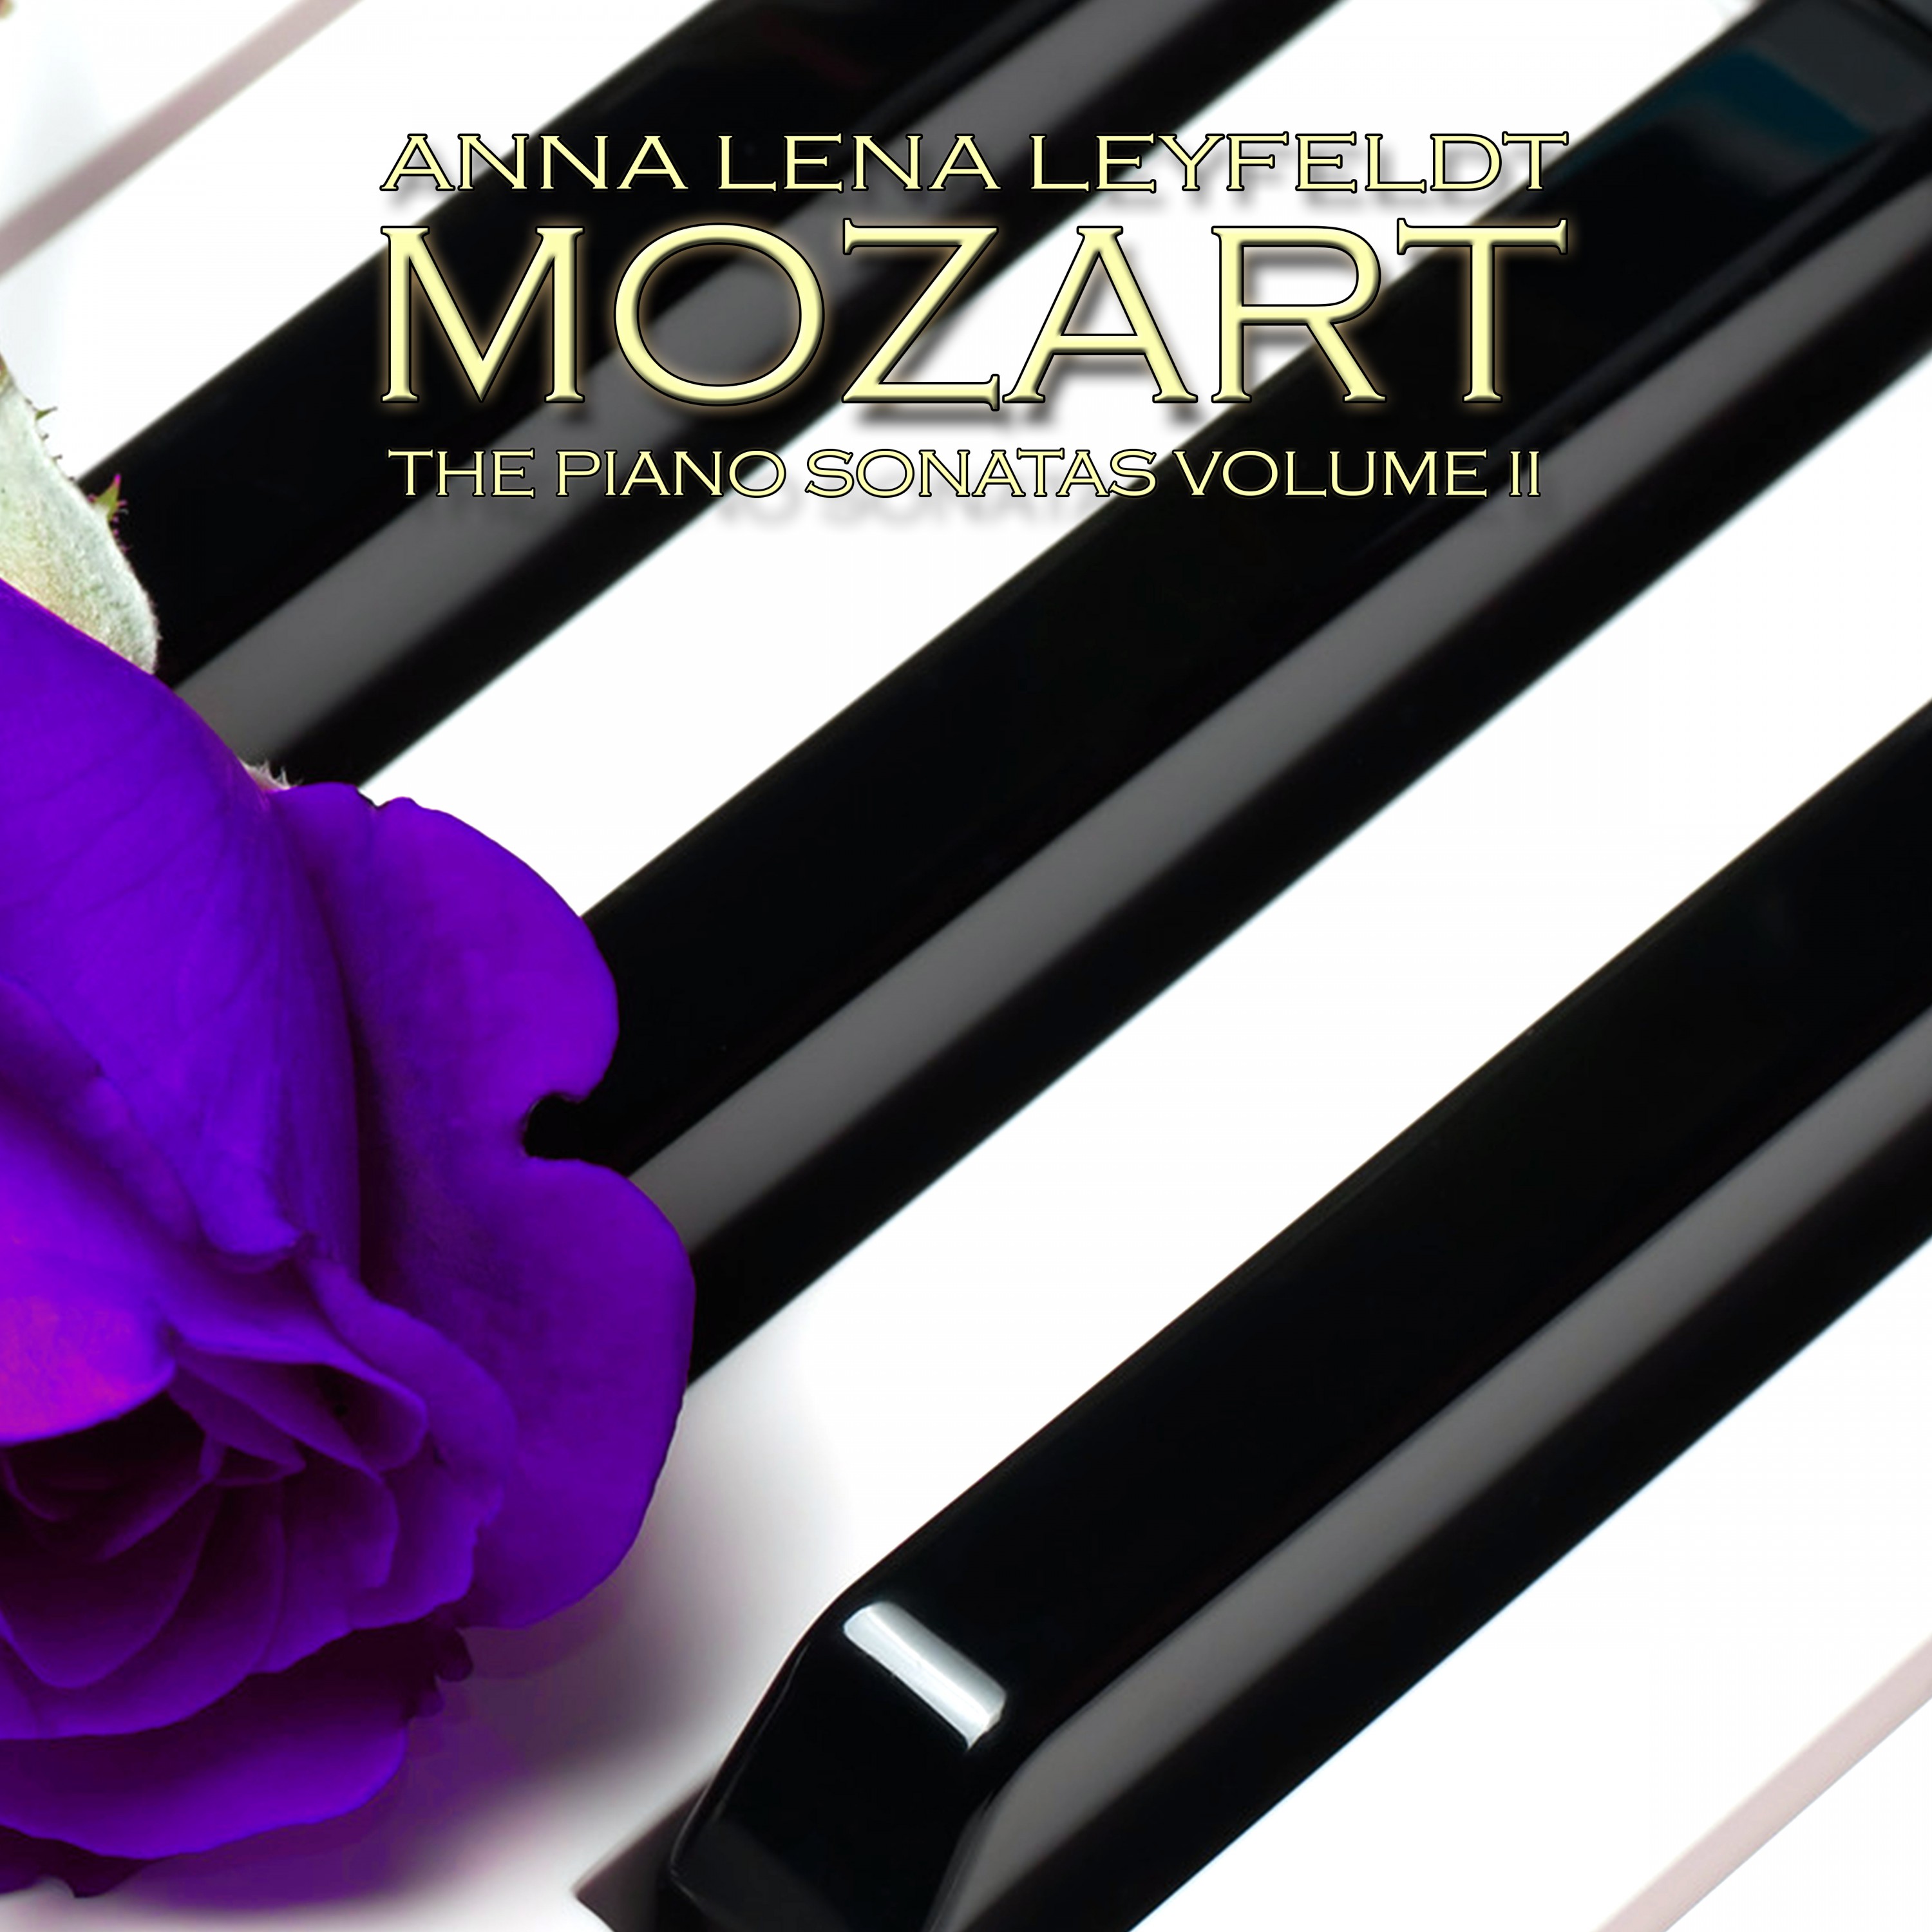 Mozart: The Piano Sonatas, Vol. 2